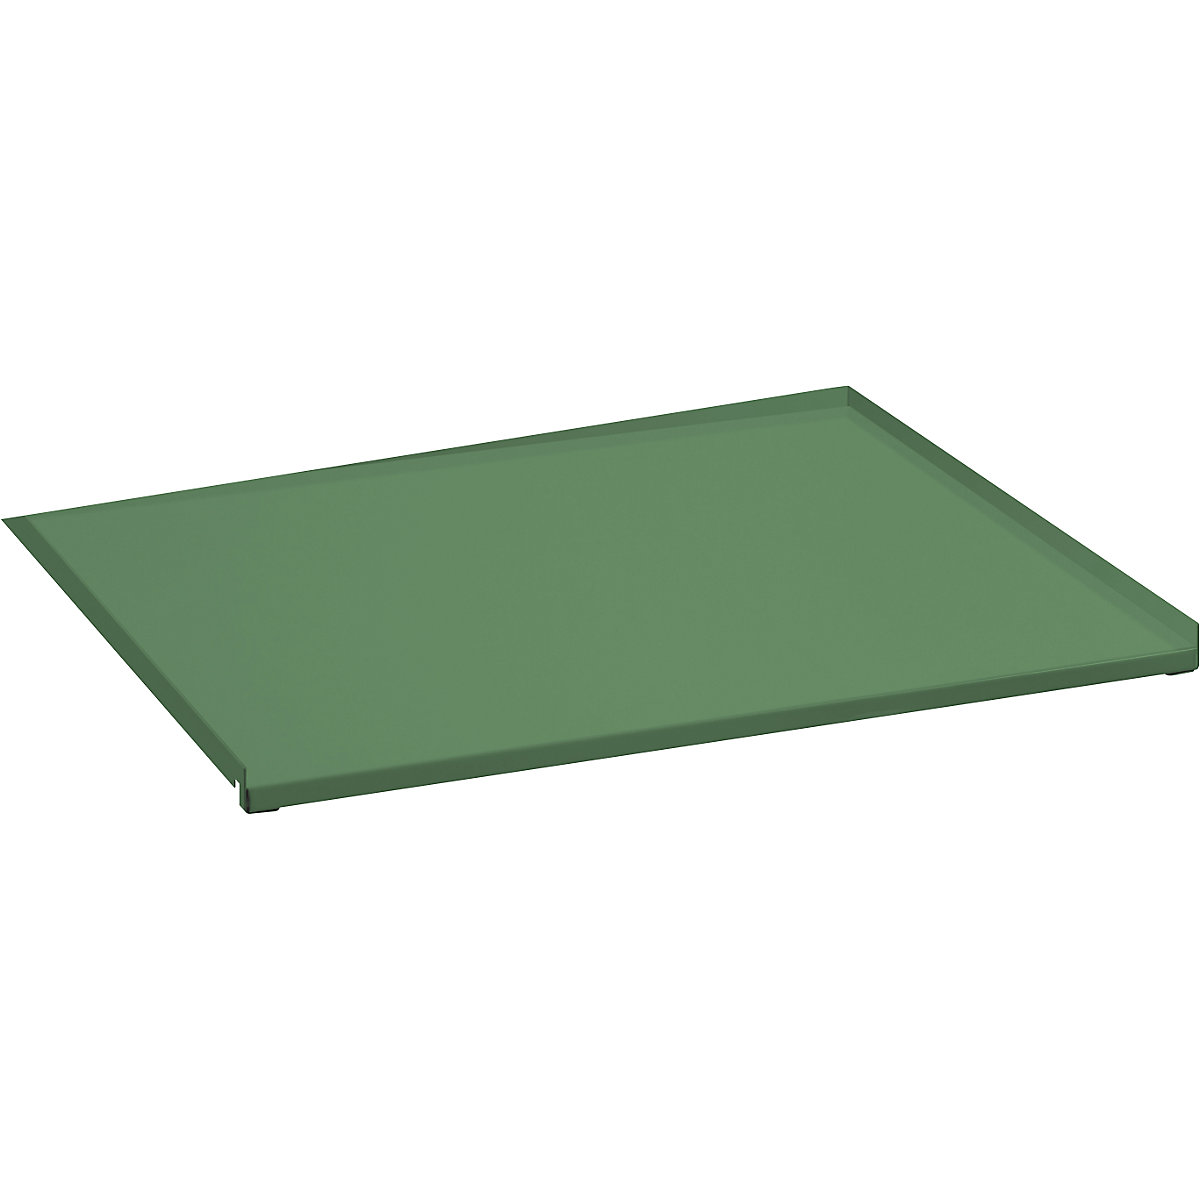 Plechový kryt pro výtažný rám – LISTA, jednoduchý výsuv, pro š x h 890 x 860 mm, rezedová zelená-3